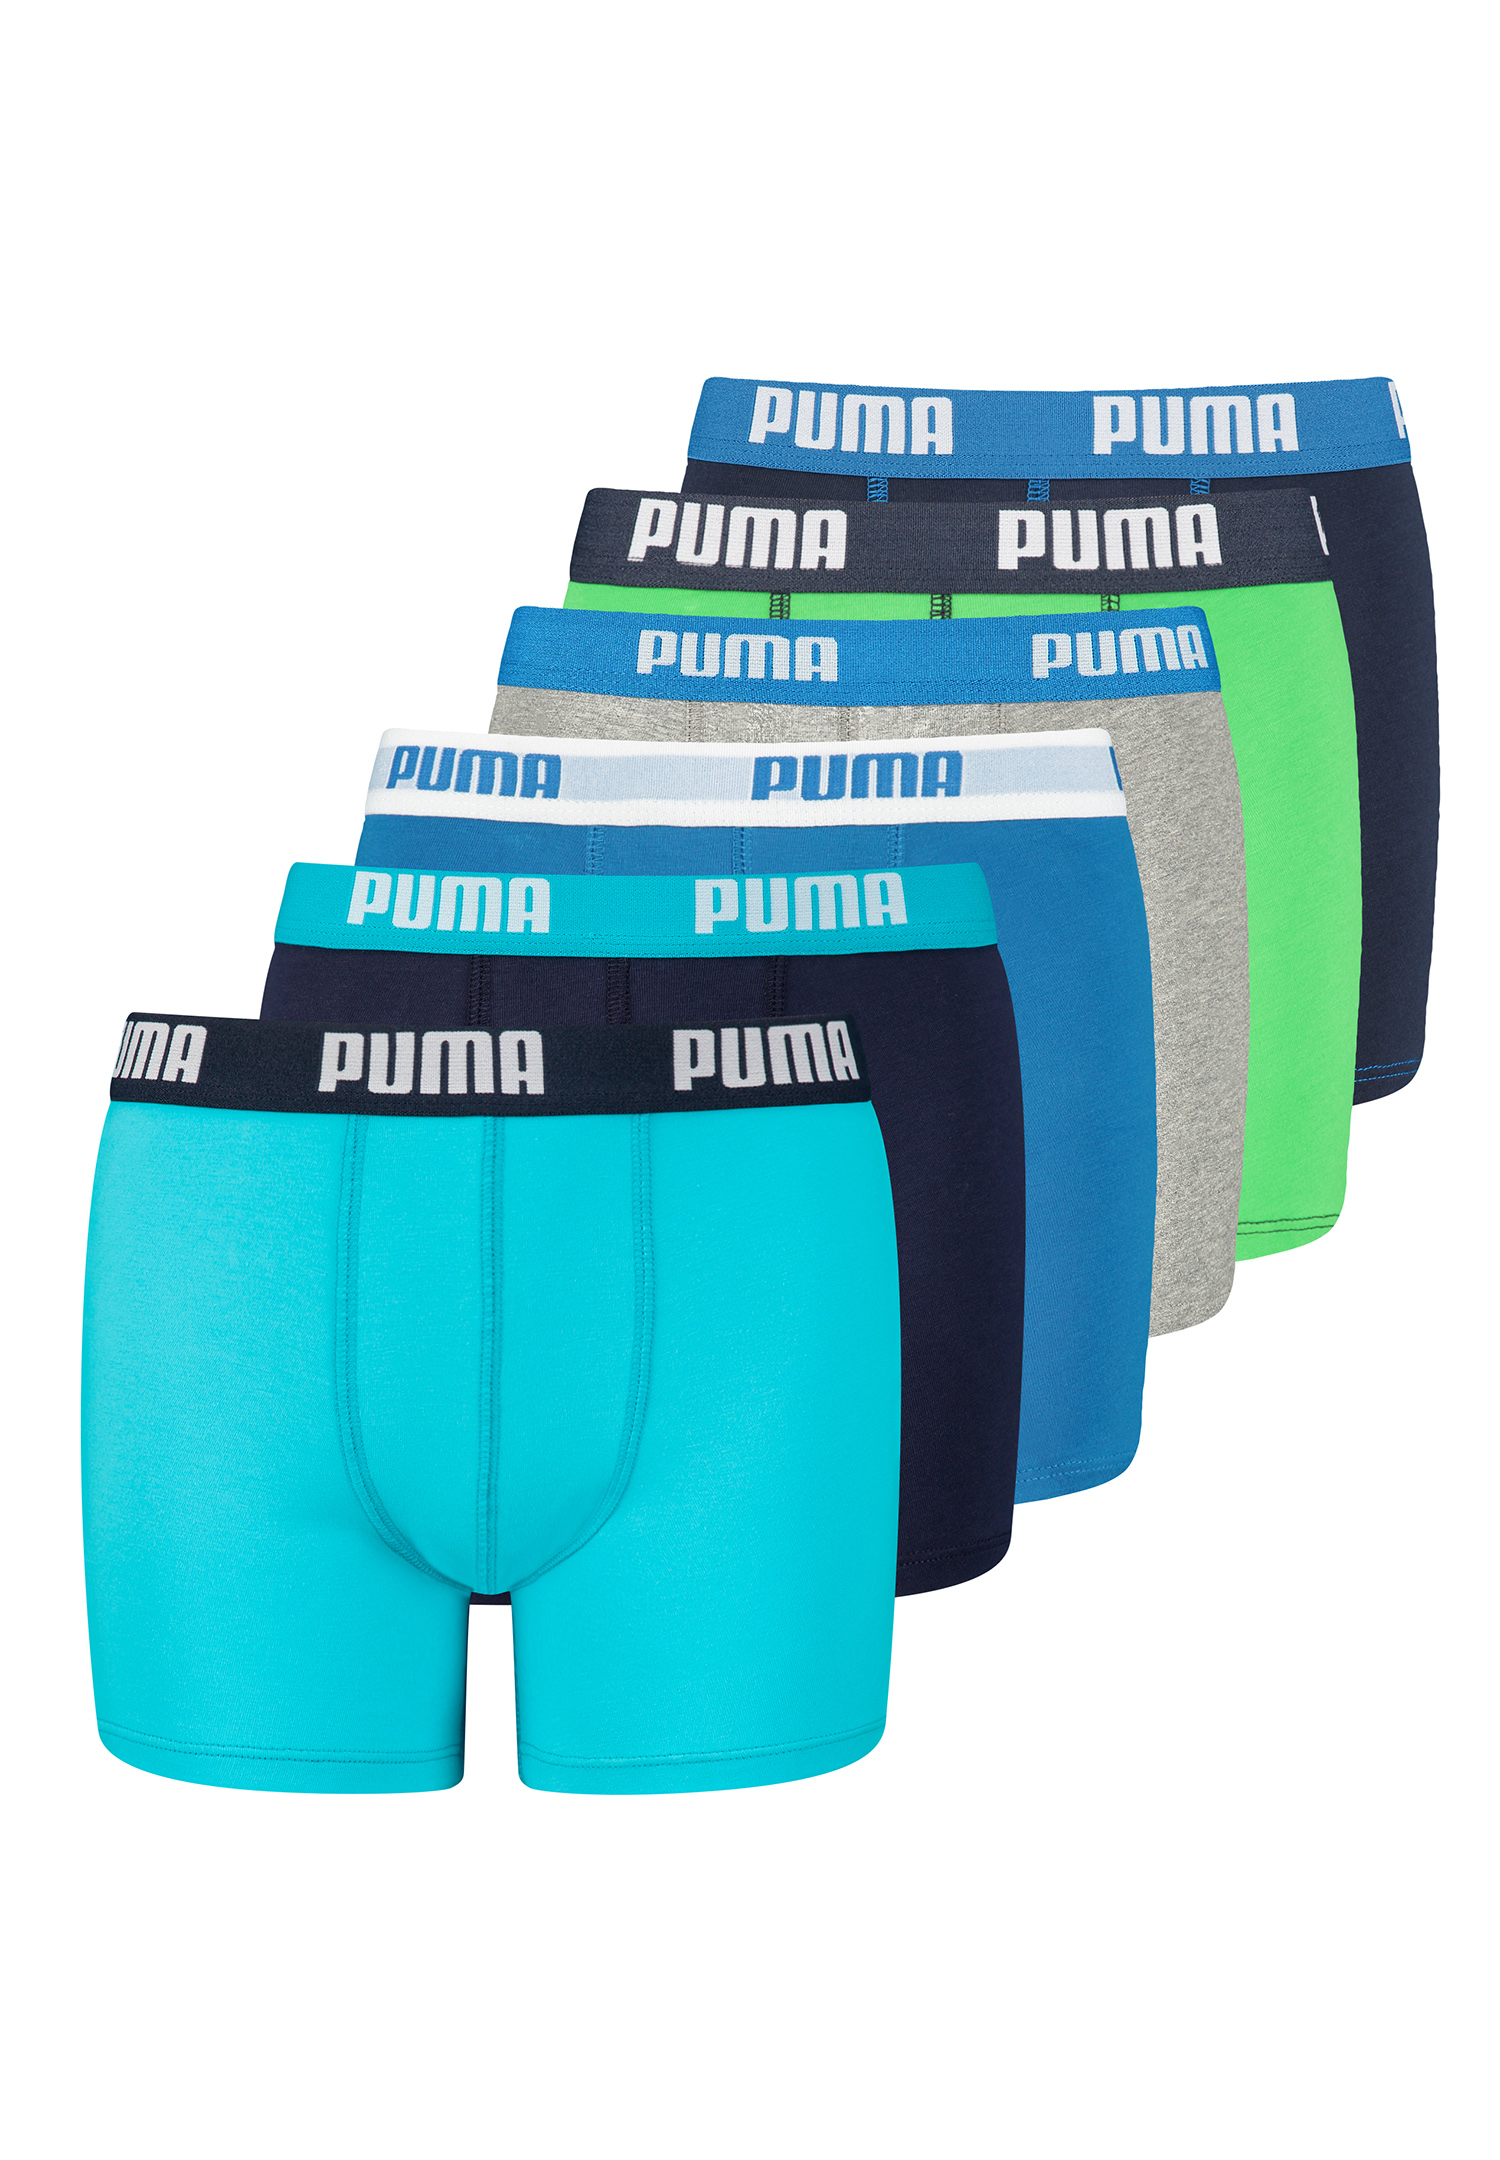 Puma Boxershorts Jungen Kinder Unterhose Unterwäsche 6 er Pack